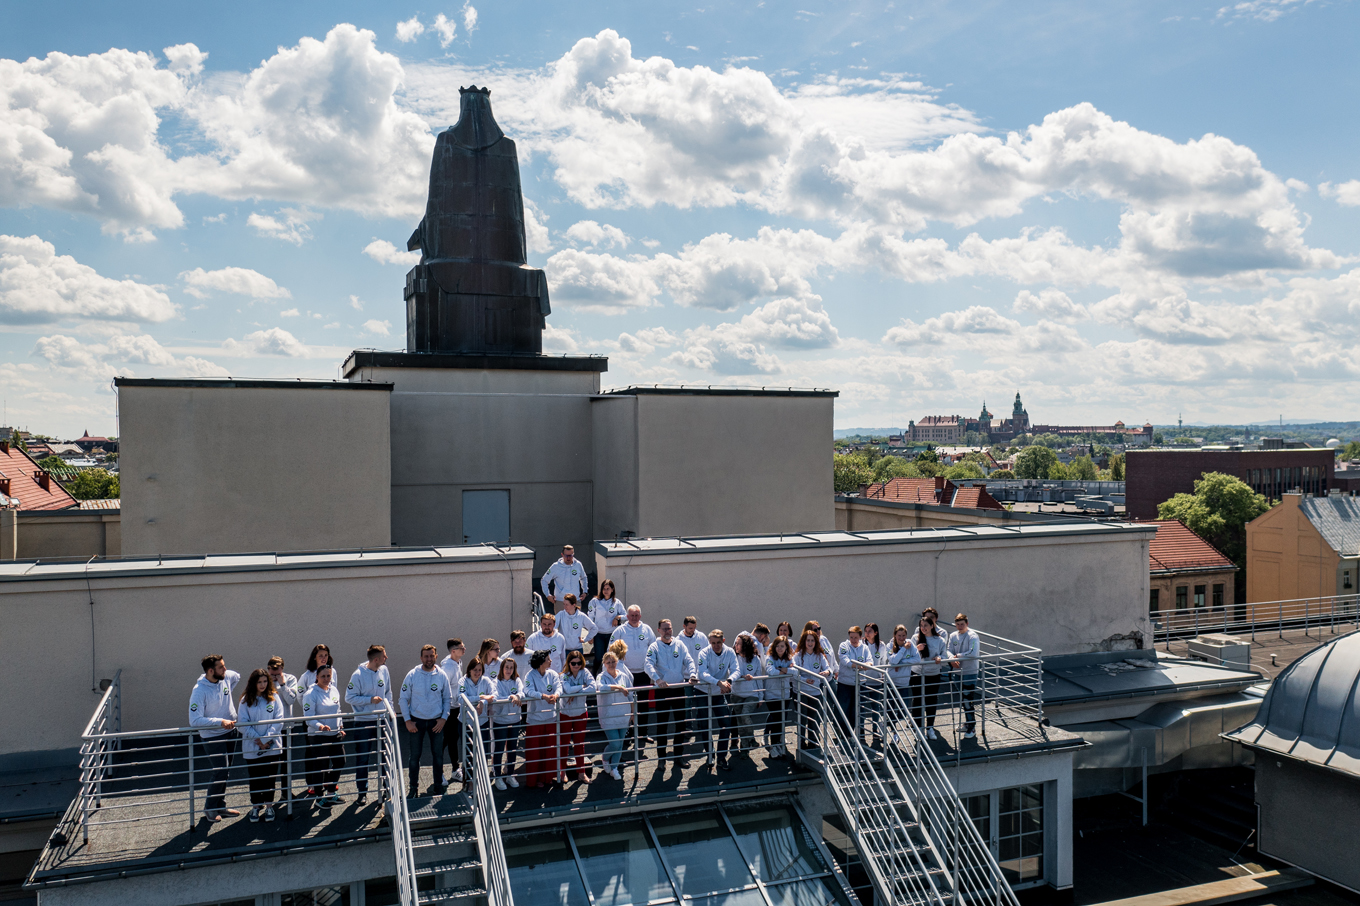 Pracownicy WILiGZ stoją na dachu budynku ubrani w jednolite szare bluzy wydziałowe. W tle widać niebo oraz panorame Krakowa.